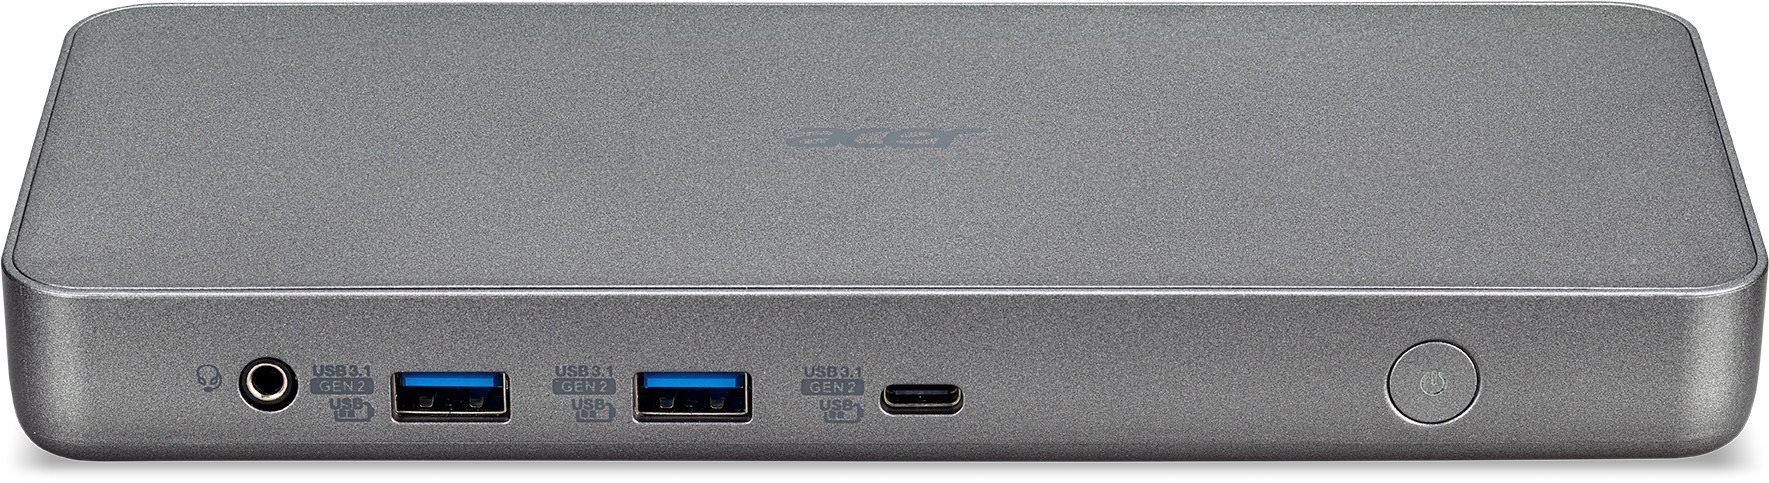 Acer USB Type-C Dock II D501 - 1xUSB-C (felfelé irányuló adatfolyam az NB-hez), 2xUSB-A 3.1 Gen2, 4xUSB-A 3.1 Gen1, 1xDP 1.4 / HDMI 2.0, 1xRJ45